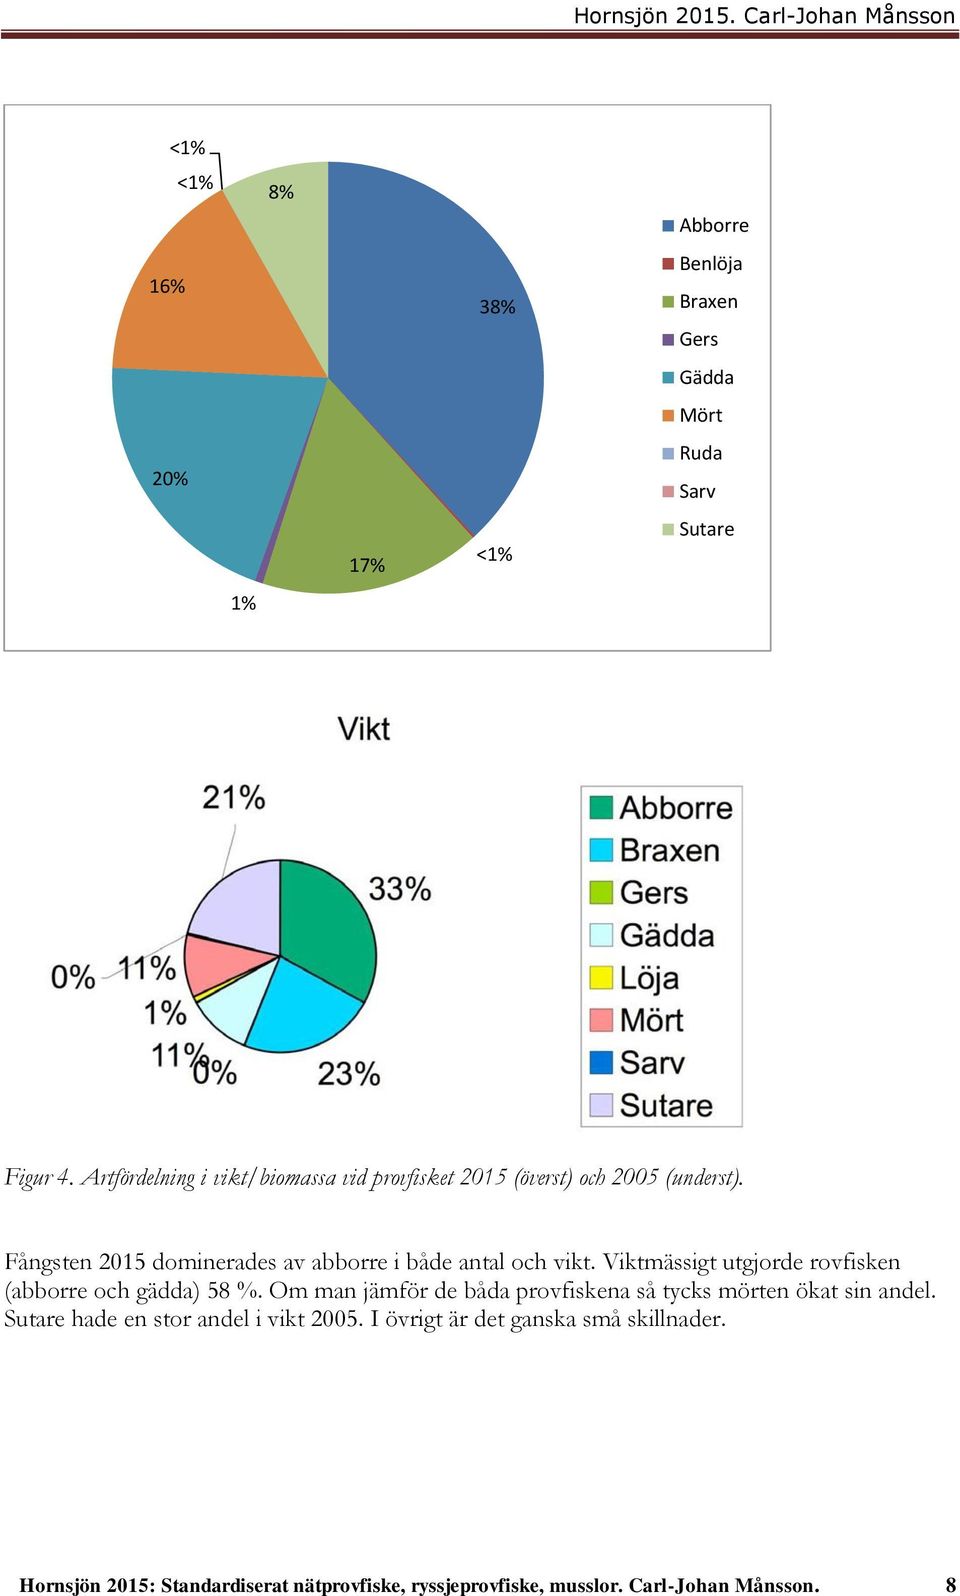 Fångsten 2015 dominerades av abborre i både antal och vikt. Viktmässigt utgjorde rovfisken (abborre och gädda) 58 %.